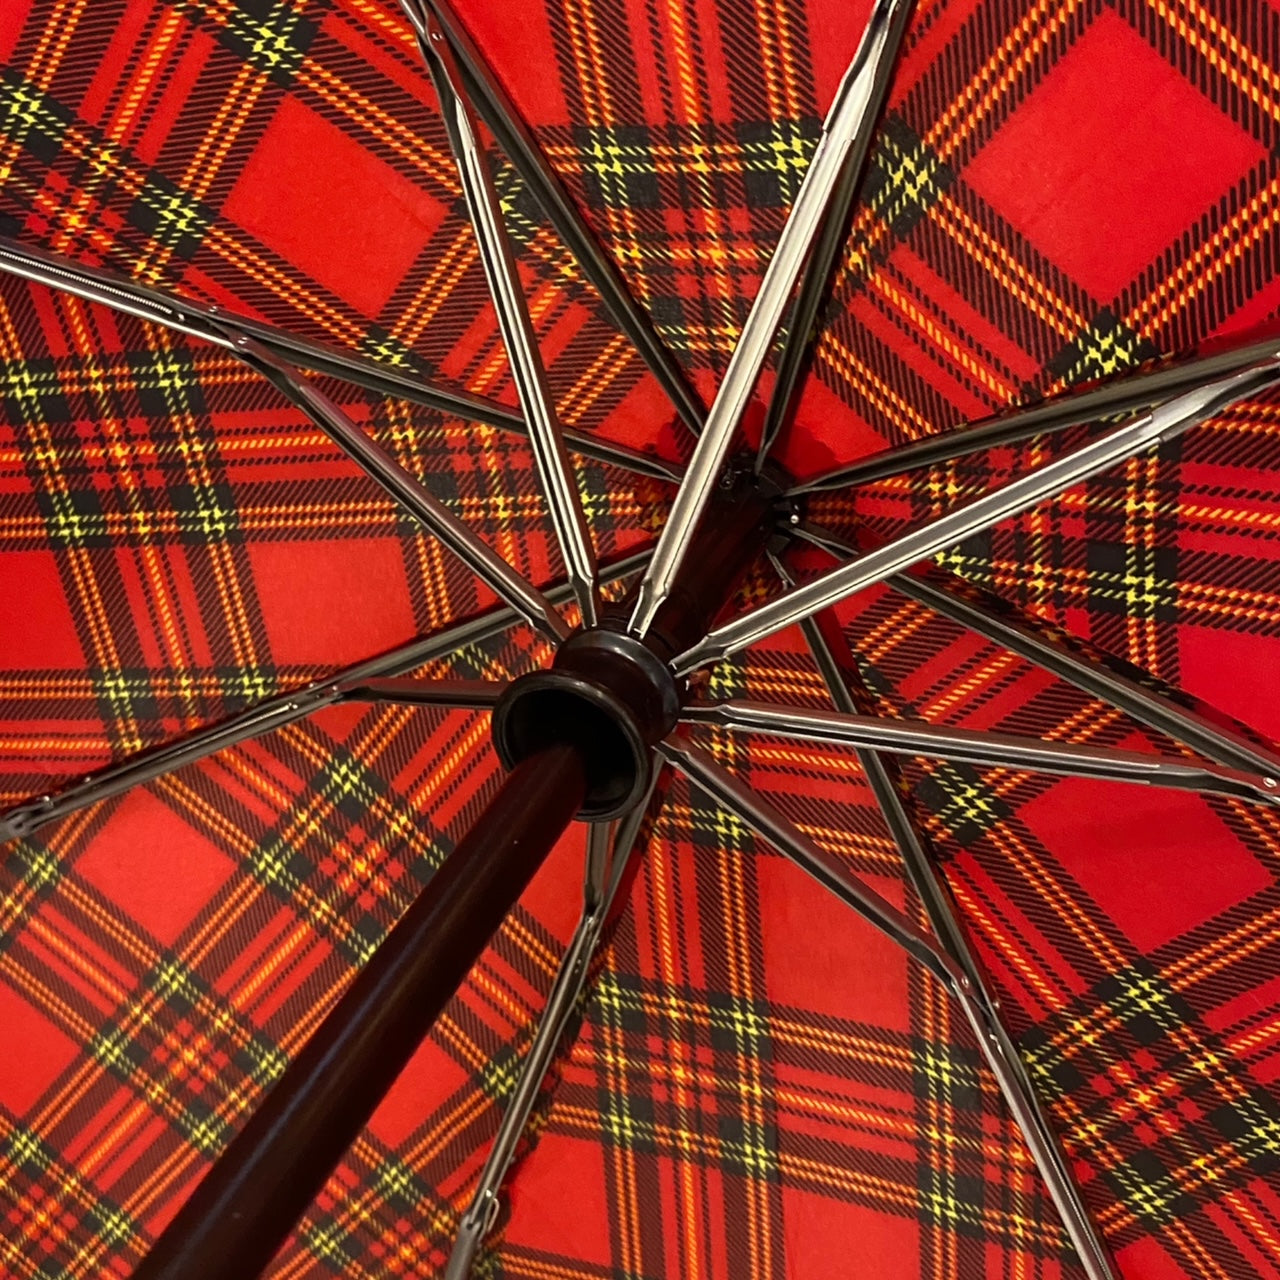 Ombrello pieghevole Magnum il gigante della pioggia apri e chiudi automatico Antivento Diametro 115 cm fantasia scozzese unisex